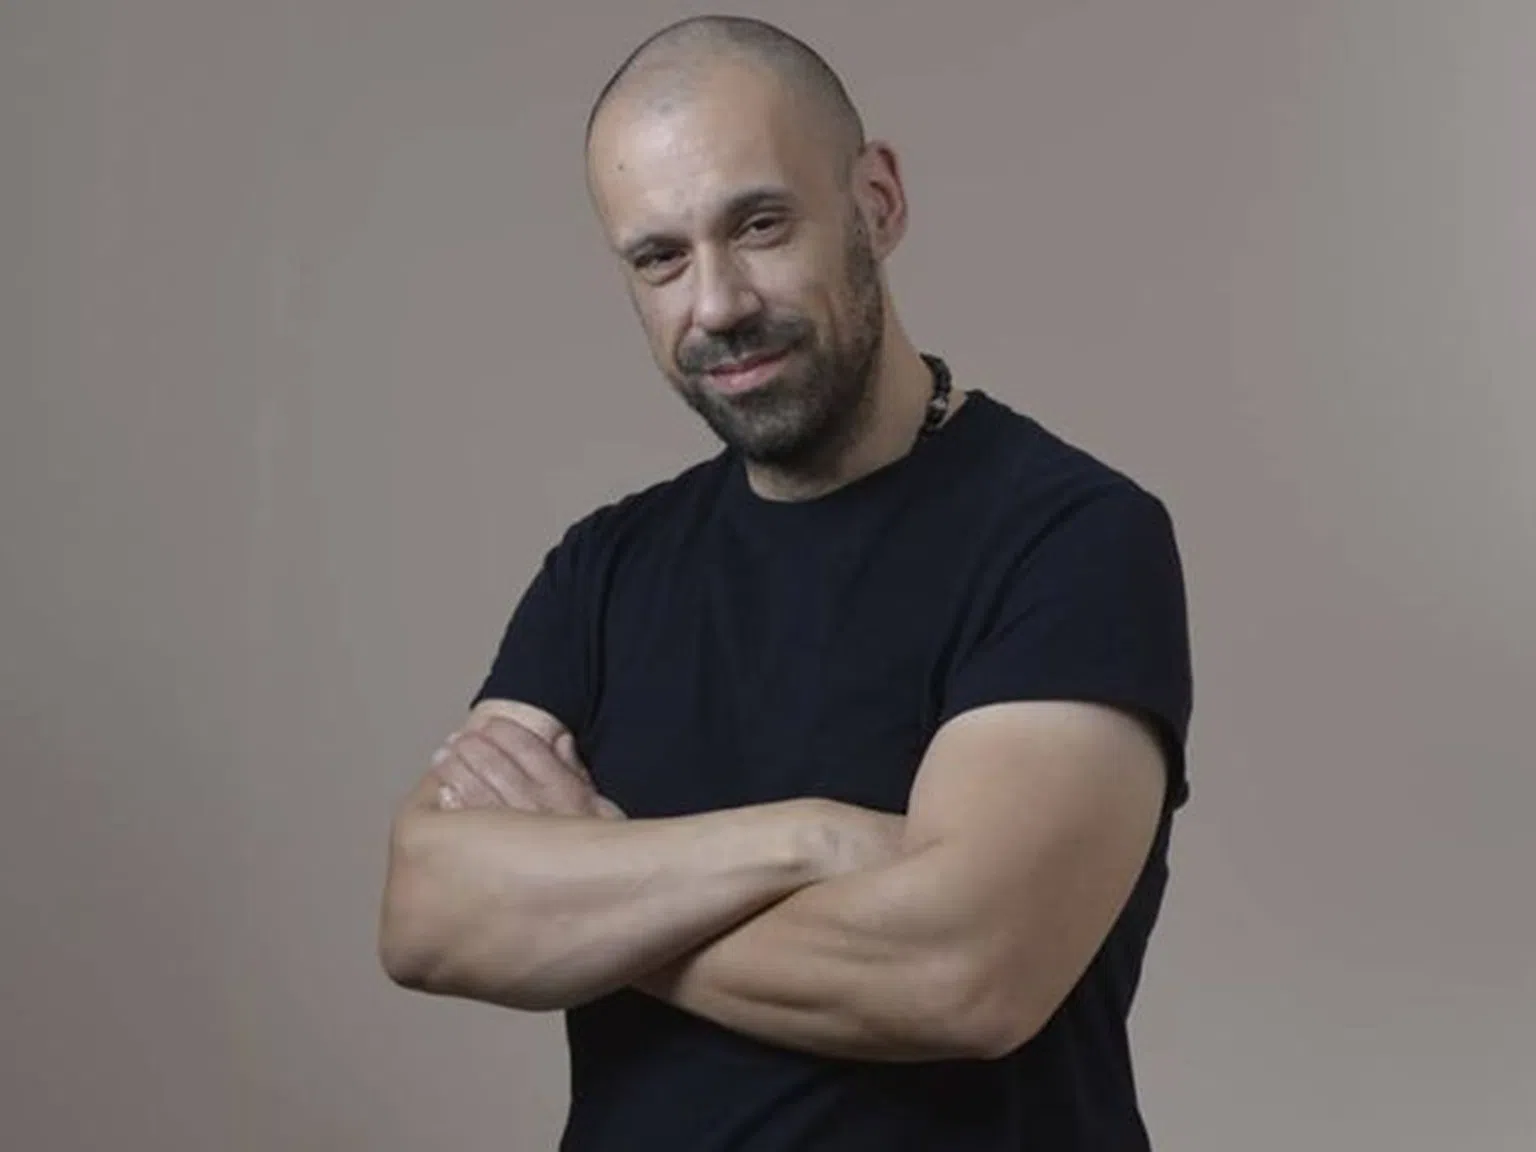 Диетата на Атанас Узунов е рекордьор в свалянето на килограми, твърди създателят ѝ